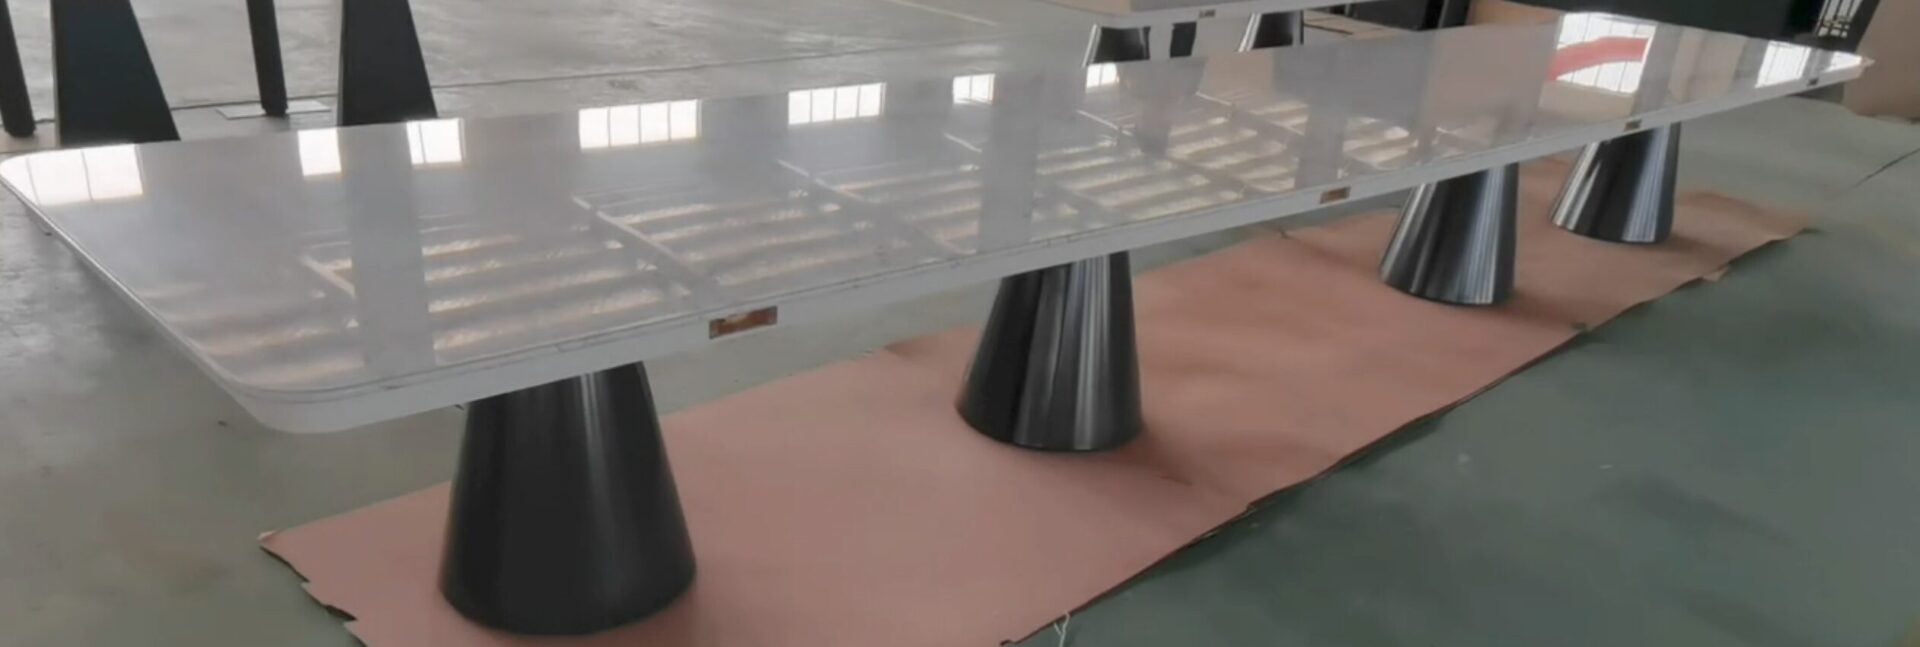 中国で作る超大きな大理石テーブル